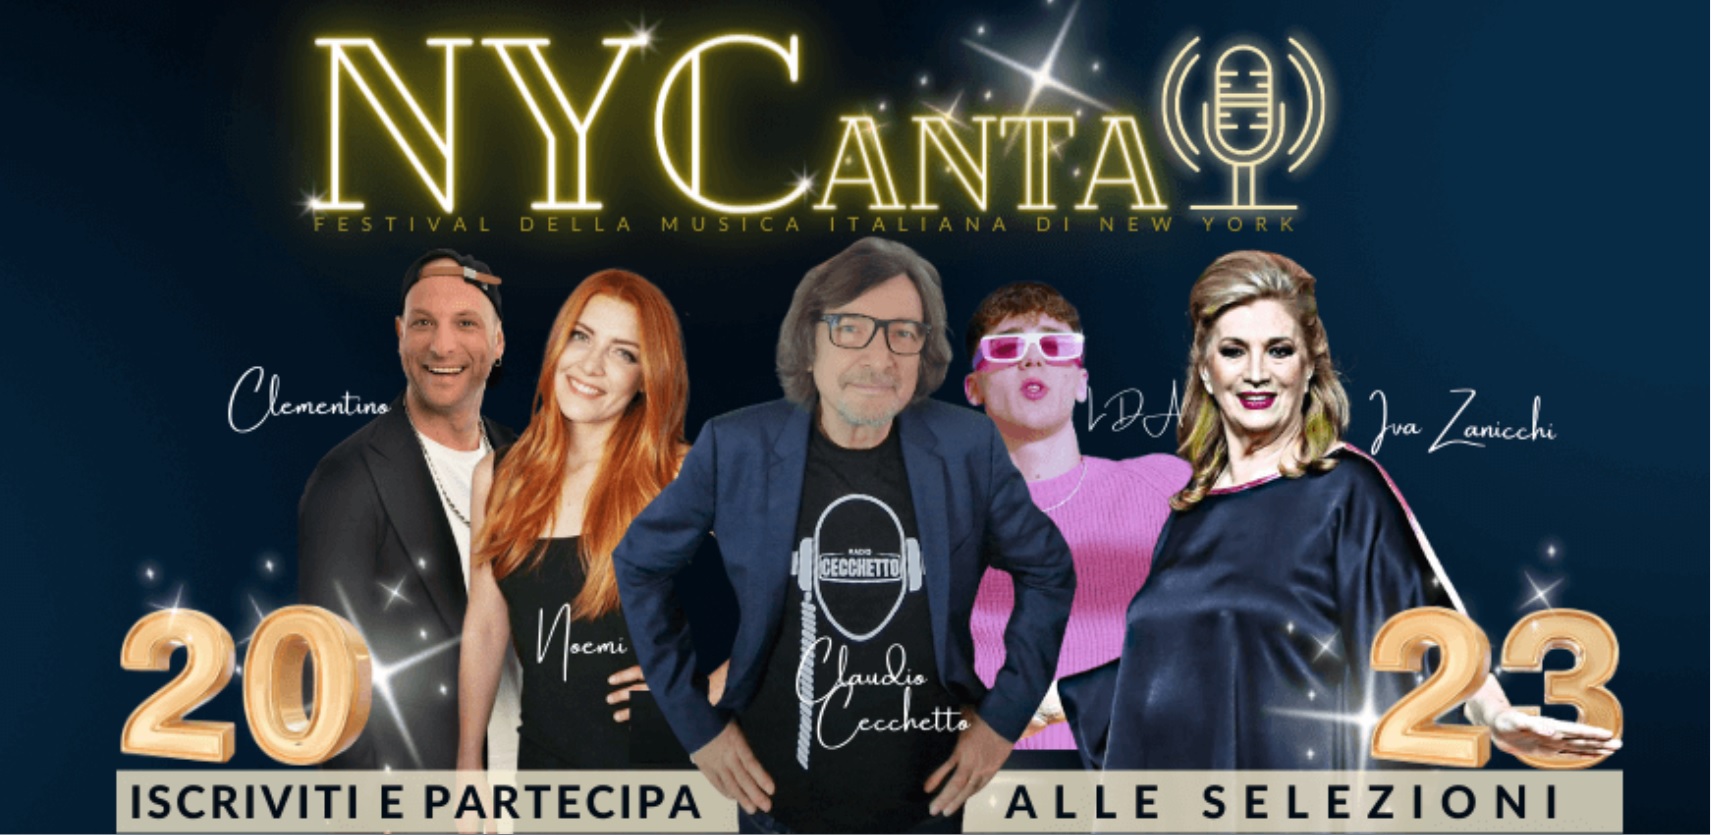 NYCanta, il Festival della Musica italiana di New York - Edizione